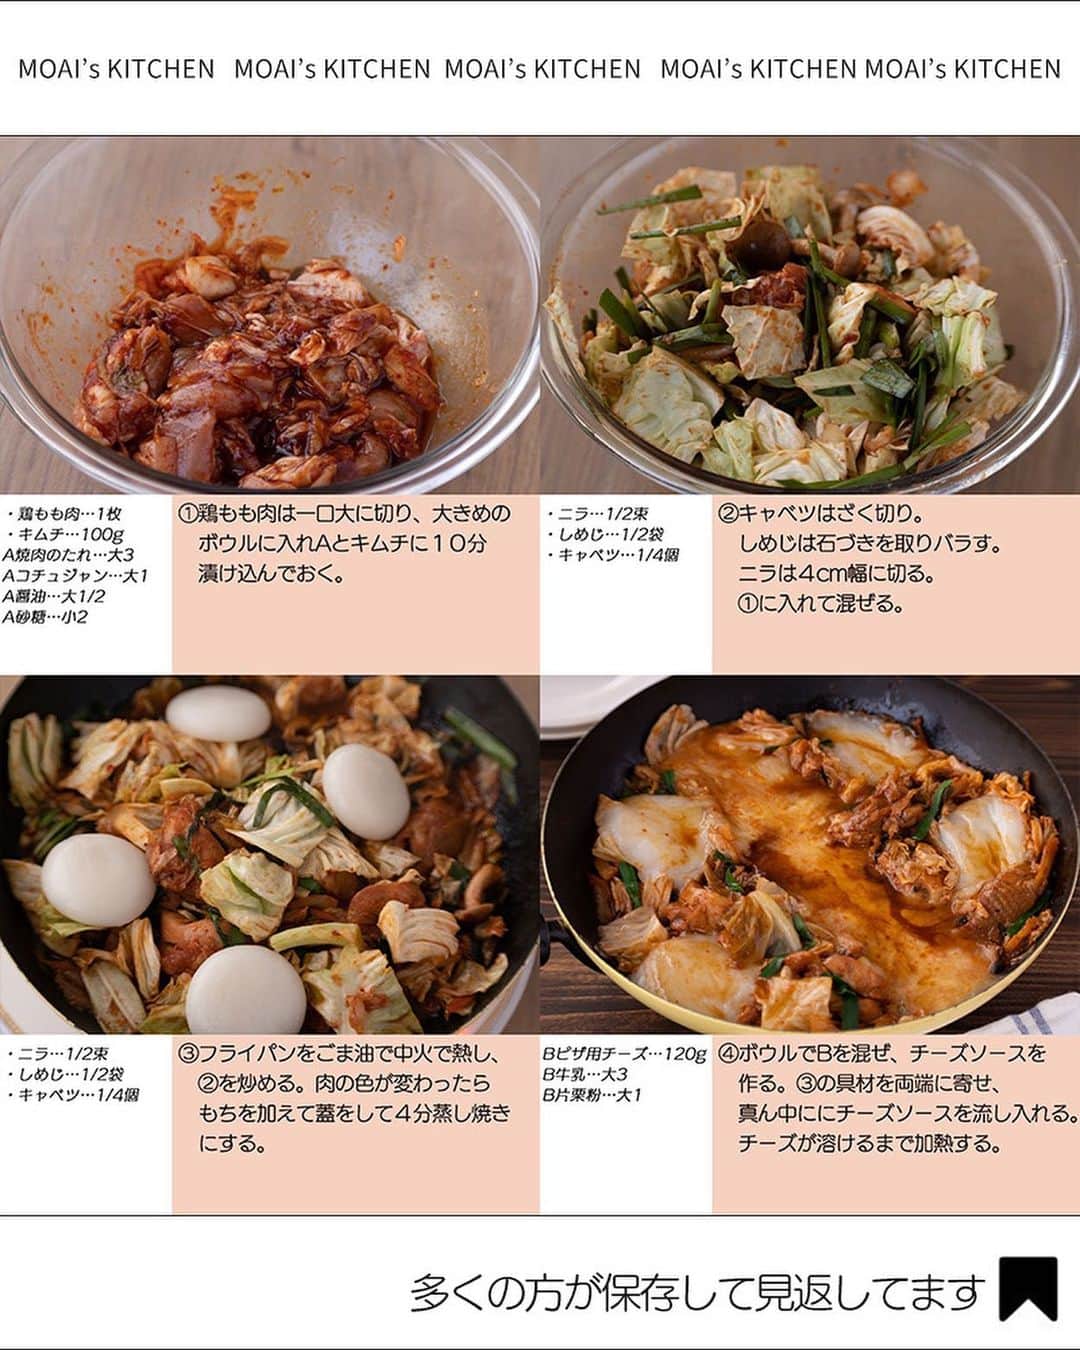 もあいさんのインスタグラム写真 - (もあいInstagram)「レシピ付き ⋆⸜ 韓国料理レシピ4選 ⸝⋆  コメントでみんなとお話したいです😭💕💕💕 些細なことでもお待ちしてます！  ⋈・。・。⋈・。・。⋈・。・。⋈ ・。・。⋈  ようこそ٩(^‿^)۶ Ⓜ︎ⓄⒶⒾ🅢ⓀⒾⓉⒸⒽⒺⓃ 𓎩へ こんばんは、もあいです︎ 𓇚  ピリ辛おいしい韓国料理♪ 自分でもよく作るしお店でもよく食べます！ おすすめ4品まとめたので、ぜひ試してみてくださいね😊  ♔∴∵∴♔∴∵∴♔∴∵∴♔∴∵∴♔∴∵∴♔∴∵∴♔  右上の保存ボタンを押して あとでゆっくり見返してくださいね♡  #OL仕事めし #働楽ごはん #モアイズキッチン  ✍︎ recipe① 〰〰〰〰 ⋆⸜ 簡単チーズプデチゲ ⸝⋆  ✿ 材料(2人分)   ・インスタントラーメン…1袋 ・キムチ…80g ・ソーセージ…4本 ・えのき…30g ・豆腐…100g ・青ネギ…3本 ・ピザ用チーズ…30g ・ごま油…大さじ1/2 おろしにんにく…小さじ1 おろし生姜…小さじ1  A水…400ml A鶏ガラスープの素…小さじ1 Bコチュジャン…大さじ1  B味噌…小さじ2 Bみりん…小さじ1 Bすりごま…小さじ1  ✿ 作り方  ①鍋にごま油、すりおろし生姜・ 　にんにくを入れ弱火で熱する。 　香りがたってきたらキムチを加え 　中火で炒める。  ②えのきは石付きをとってほぐし、 　ソーセージは斜め半分に切る。 　豆腐はスプーンですくいながら 　加え、一混ぜする。  ③Aを加え一煮立ちさせたら 　合わせたBを溶かし加える。 ④インスタントラーメンを入れ 　ほぐれ始めたらチーズを加えて 　好みの硬さまで煮込む。  　小口切りにした青ネギを仕上げに 　トッピングする。  ✍︎ recipe② 〰〰〰〰 ⋆⸜ キムチーズキンパ ⸝⋆ 難易度 ✭✭✩　≀ ◷ 15 分　92円/人  ✿材料（1本分）  ・ご飯…200g ・キムチ…50g ・ツナ(油漬け)…1缶(70g) A焼肉のたれ…小2 Aごま油…小1 Aごま…少々 ・ピザ用チーズ…適量 ・海苔(全形)…1枚  ✿作り方  ①キッチンバサミでキムチを小さく切る。 　ボウルでご飯、キムチ、油を切った 　ツナ、Aと混ぜ合わせる。  ②ラップの上に海苔をのせ、①を 　敷き詰め、ピザ用チーズを乗せる。 　海苔の上１cmは残しておく。  ③ラップでのの字巻きにする。 　巻き終わりはサイドから具が 　はみ出るので指で押し戻しておく。  ④少し休ませて落ち着いてきたら、 　濡れた包丁でカットして耐熱皿に 　並べる。レンジで６００Wで 　２分加熱する。 ※１回切るごとにキッチンペーパーで 　汚れを落としながらすると切りやすいです  ✍︎ recipe③ 〰〰〰〰 ⋆⸜ 中毒 モチーズタッカルビ ⸝⋆ 難易度 ✭✭✩ ≀ ◷ 作業時間15 分 ≀ 241円/人  ✿材料(2人分)  ・鶏もも肉…1枚 ・もち…4個 ・ニラ…1/2束 ・しめじ…1/2袋 ・キャベツ…1/4個 ・キムチ…100g ・ごま油…適量 A焼肉のたれ…大3 Aコチュジャン…大1 A醤油…大1/2 A砂糖…小2 Bピザ用チーズ…120g B牛乳…大3 B片栗粉…大1  ✿作り方   ①鶏もも肉は一口大に切り、大きめの 　ボウルに入れAとキムチに１０分 　漬け込んでおく。  ②キャベツはざく切り。 　しめじは石づきを取りバラす。 　ニラは４cm幅に切る。 　①に入れて混ぜる。  ③フライパンをごま油で中火で熱し、 　②を炒める。肉の色が変わったら 　もちを加えて蓋をして４分蒸し焼き 　にする。  ④ボウルでBを混ぜ、チーズソースを 　作る。③の具材を両端に寄せ、 　真ん中ににチーズソースを流し入れる。 　チーズが溶けるまで加熱する。  ✍︎ recipe④ 〰〰〰〰 ⋆⸜ 海鮮チヂミ ⸝⋆ 難易度 ✭✭✩　≀ ◷ 15 分 114円/人  ✿材料（2人分）  ・シーフードミックス…100g ・ニラ…1/3束 ・人参…1/3本 ・玉ねぎ…1/4個 ・ごま油…適量 A薄力粉…大3 A片栗粉…大2 A水…大5 A鶏がらスープの素…小1 Bポン酢…大1.5 Bごま油…大1 Bコチュジャン…小1 Bごま…小1  ✿作り方  ①ニラは4cm幅に切る。 　人参は細切りする。 　玉ねぎは薄切りする。 　Bを混ぜてたれを作る。  ②フライパンでAを混ぜる。 　粉っぽさがなくなったらニラ、人参、 　玉ねぎ、シーフードミックスを加えて 　混ぜる。  ③②を中火で熱し、ごま油をフライパン 　の端にぐるりと回しかける。 　両面焼き色がつくまで焼く。 ※ひっくり返すの苦手な方！ 　皿に乗せて皿ごとひっくり返すと超楽ちんだよ！  ④ 中に火が通ったら、取り出して 　食べやすい大きさに切る。  ♔∴∵∴♔∴∵∴♔∴∵∴♔∴∵∴♔∴∵∴♔∴∵∴♔  ✿お知らせ  🍳キッチンブランド【moai】発売中 📕#がんばらなくてもできるおいしいすぐレシピ 発売中 （Amazon、楽天ランキング１位獲得）  @moaiskitchen TOPのURLからもご覧になれます！」5月18日 17時00分 - moaiskitchen